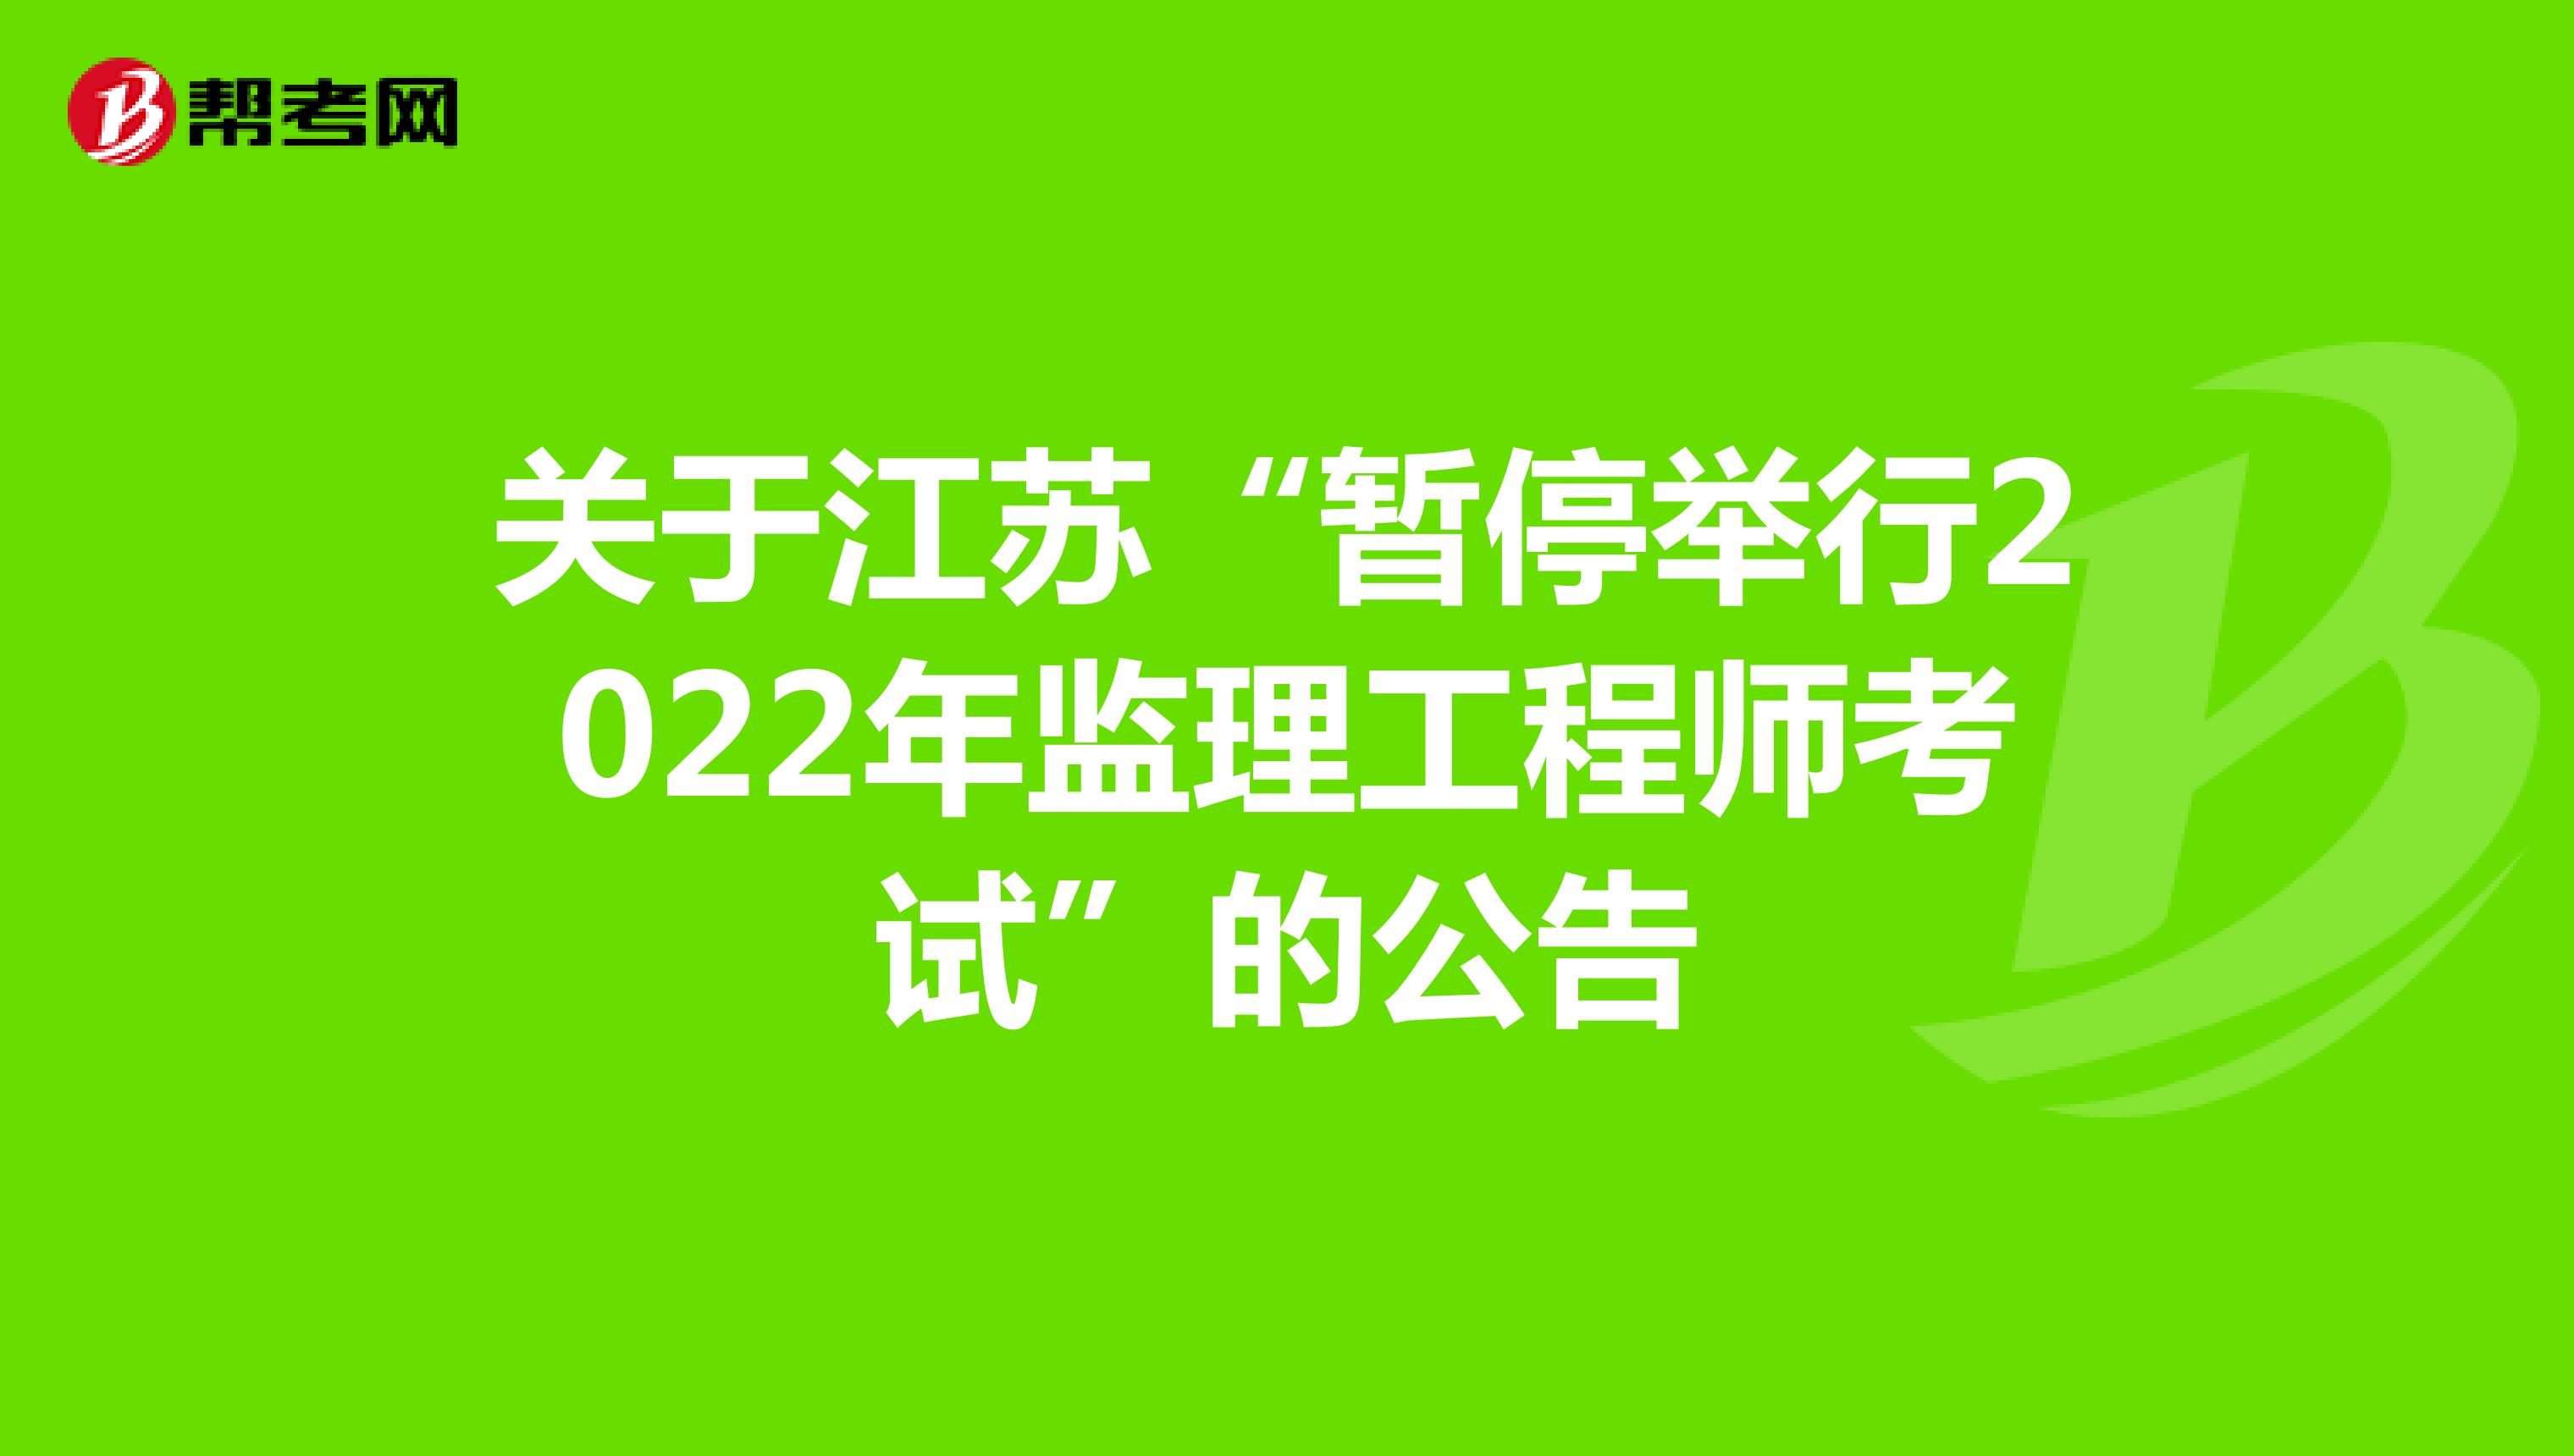 关于江苏“暂停举行2022年监理工程师考试”的公告